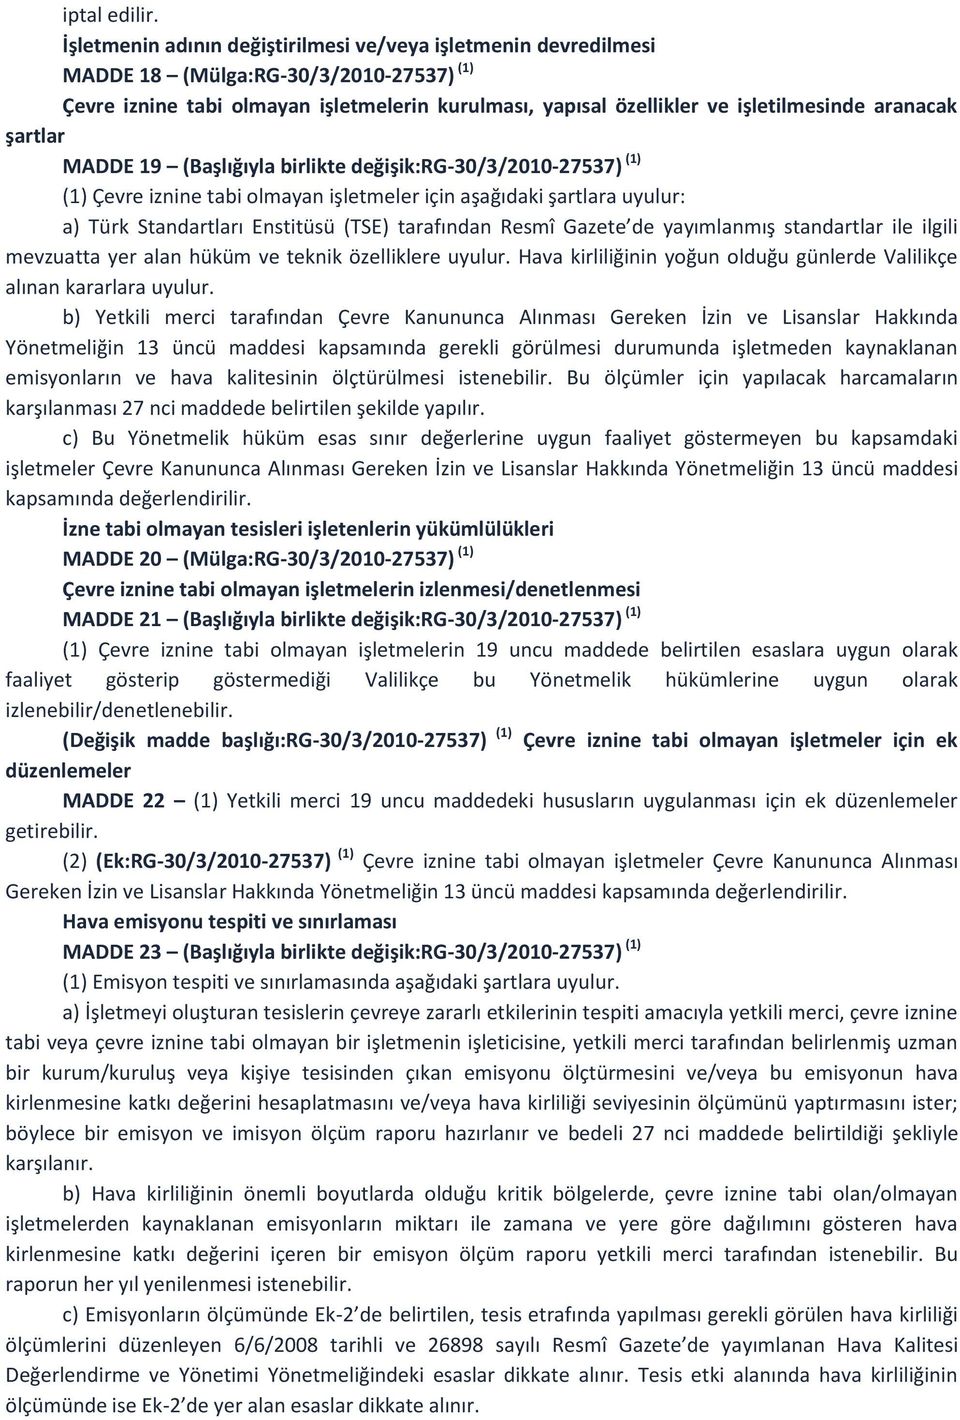 aranacak şartlar MADDE 19 (Başlığıyla birlikte değişik:rg-30/3/2010-27537) (1) (1) Çevre iznine tabi olmayan işletmeler için aşağıdaki şartlara uyulur: a) Türk Standartları Enstitüsü (TSE) tarafından